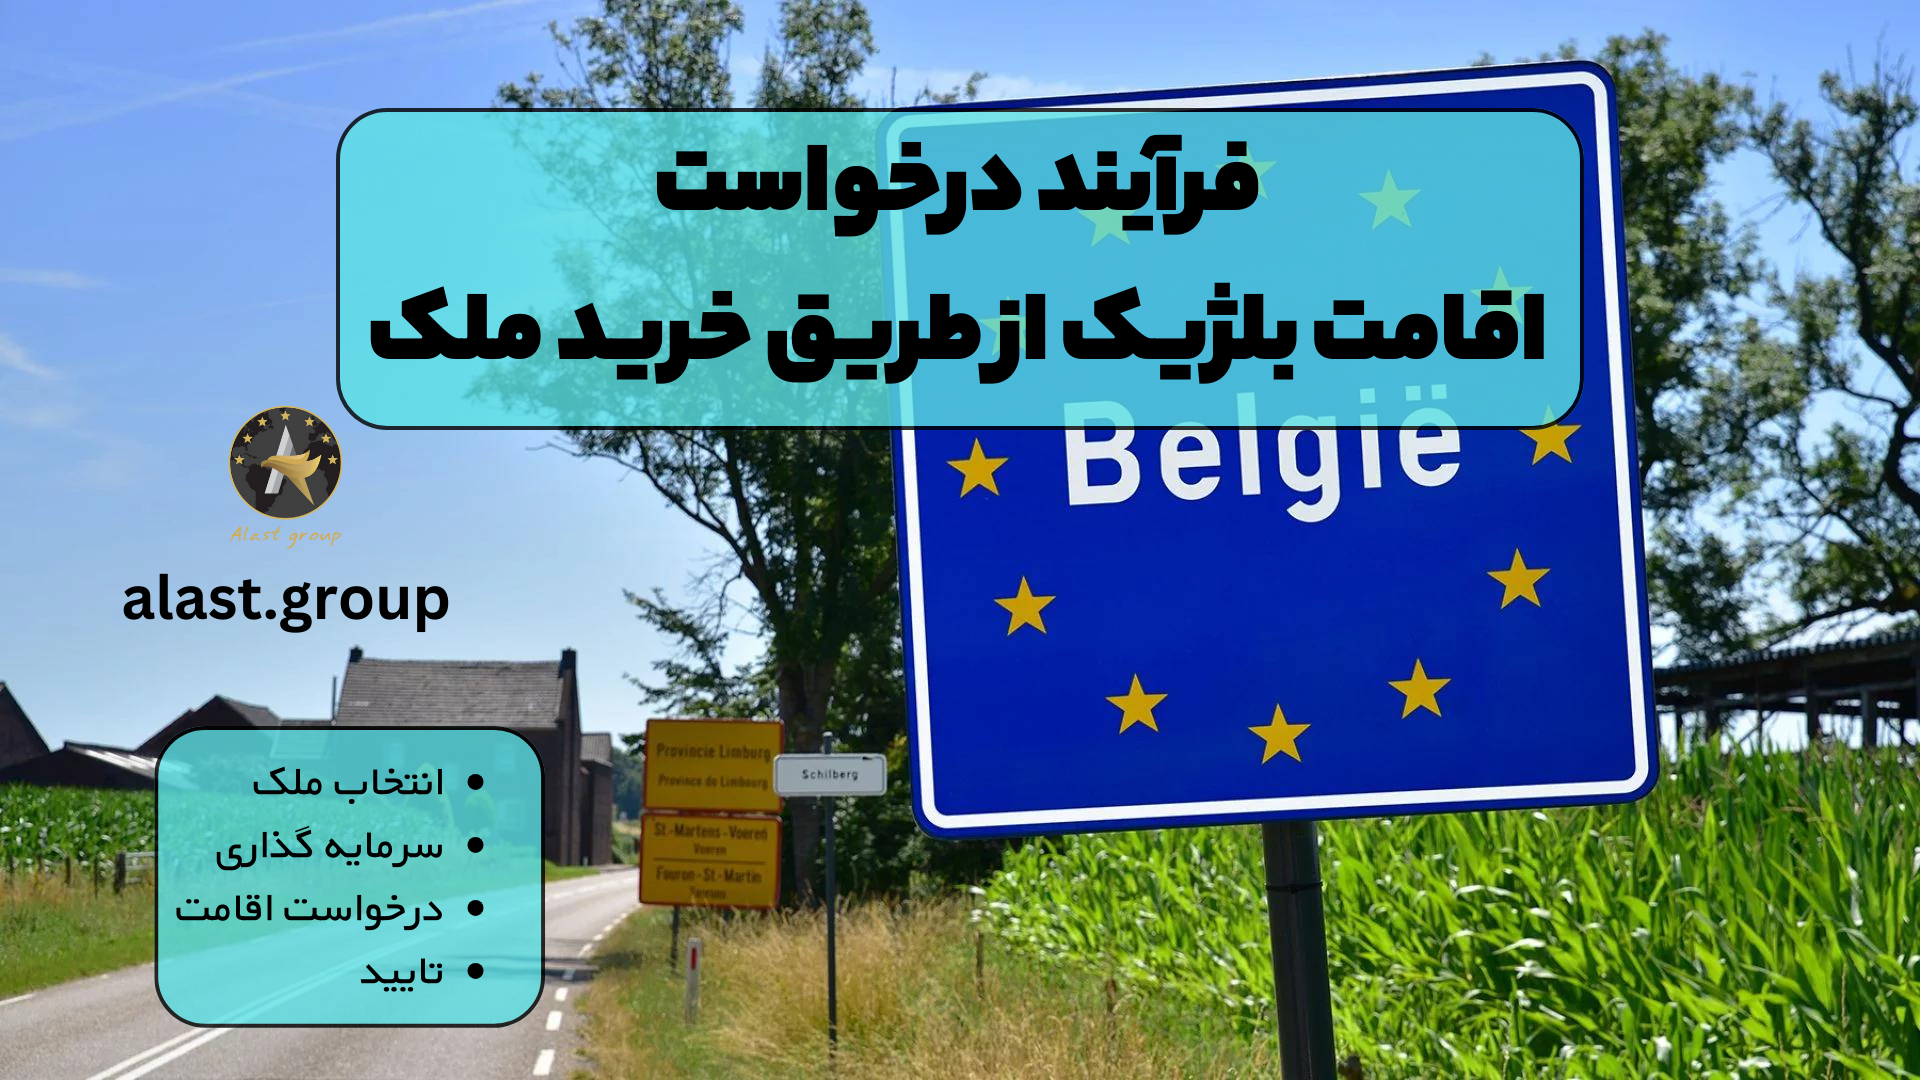 فرآیند درخواست اقامت بلژیک از طریق خرید ملک